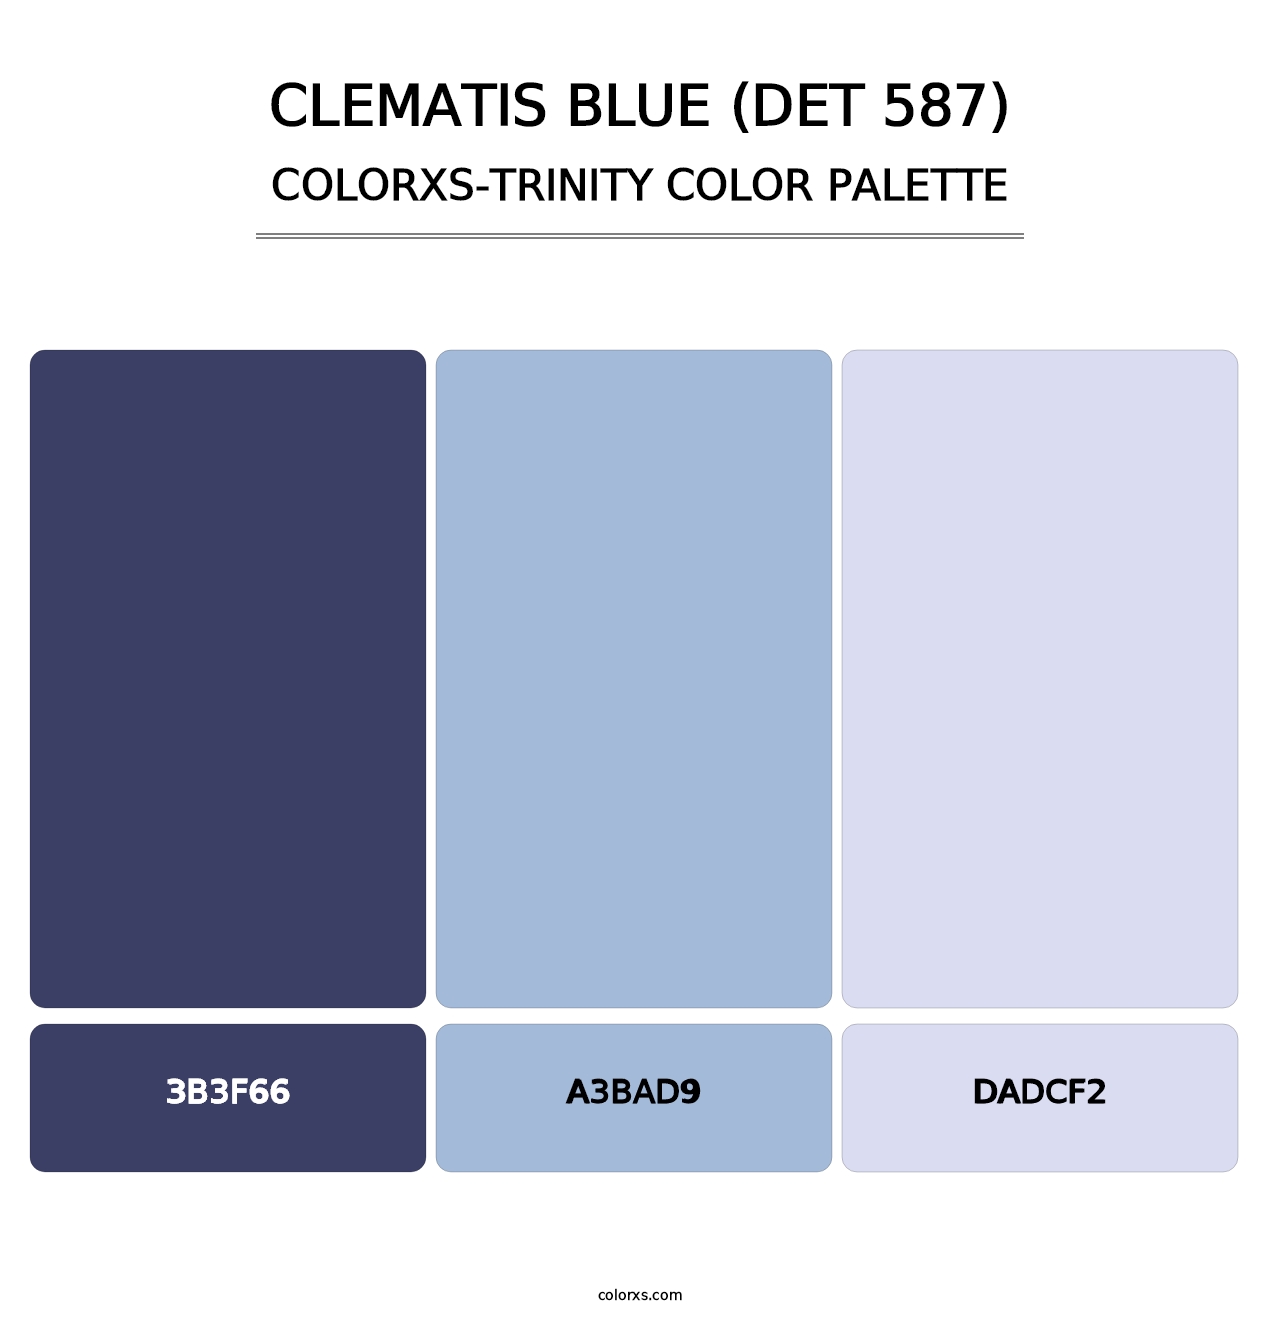 Clematis Blue (DET 587) - Colorxs Trinity Palette